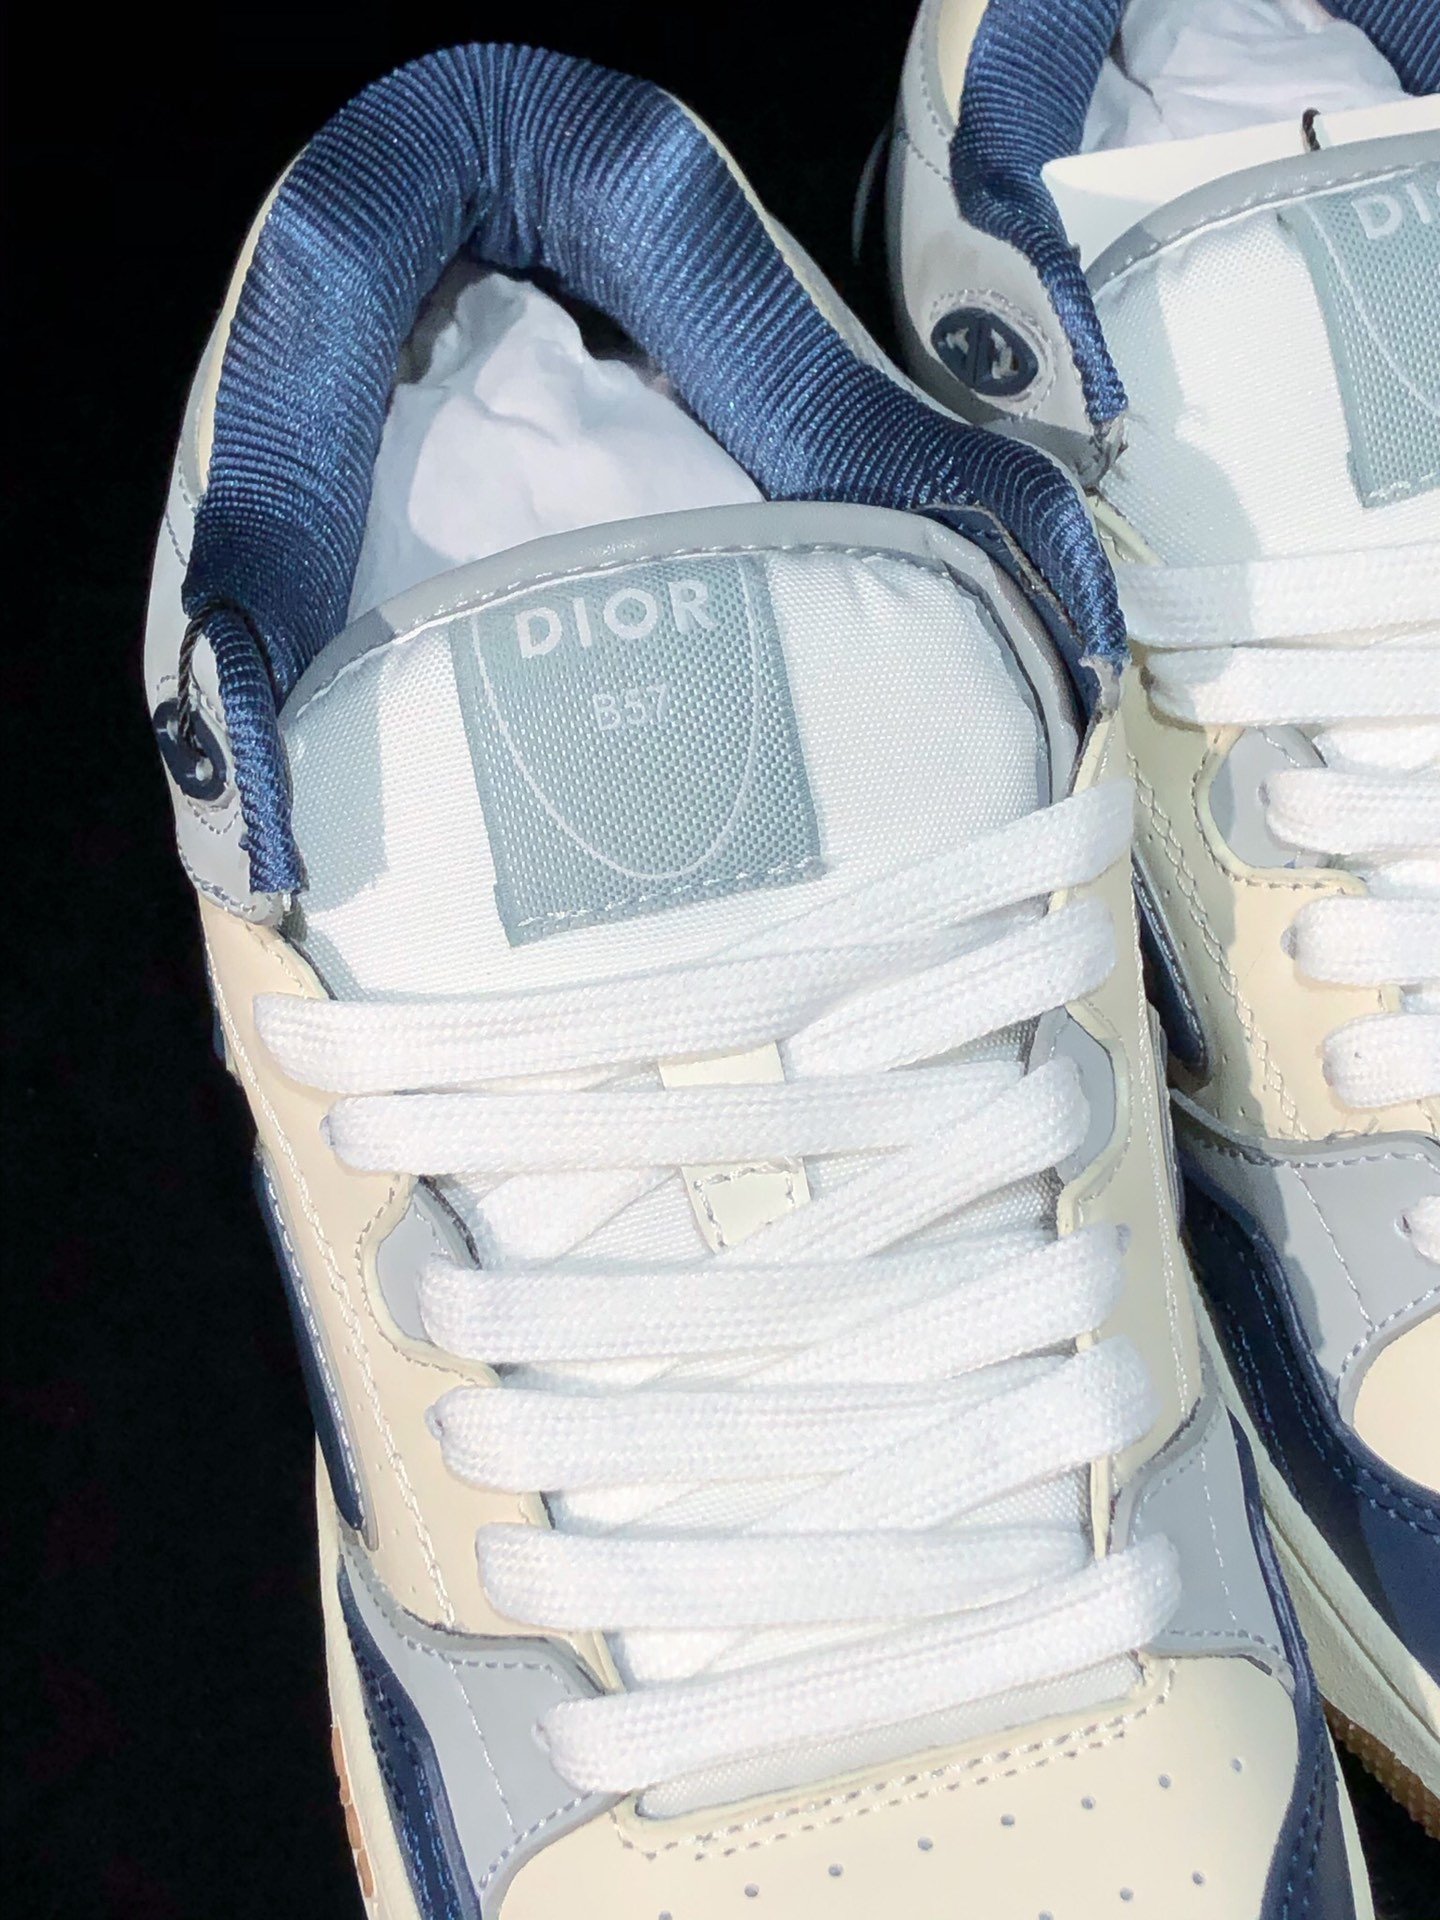 迪奥Dior2024款B57爆款休闲鞋中帮最高版本情侣款原版爆拆一比一完美复刻工艺做工细节到位原版定制材